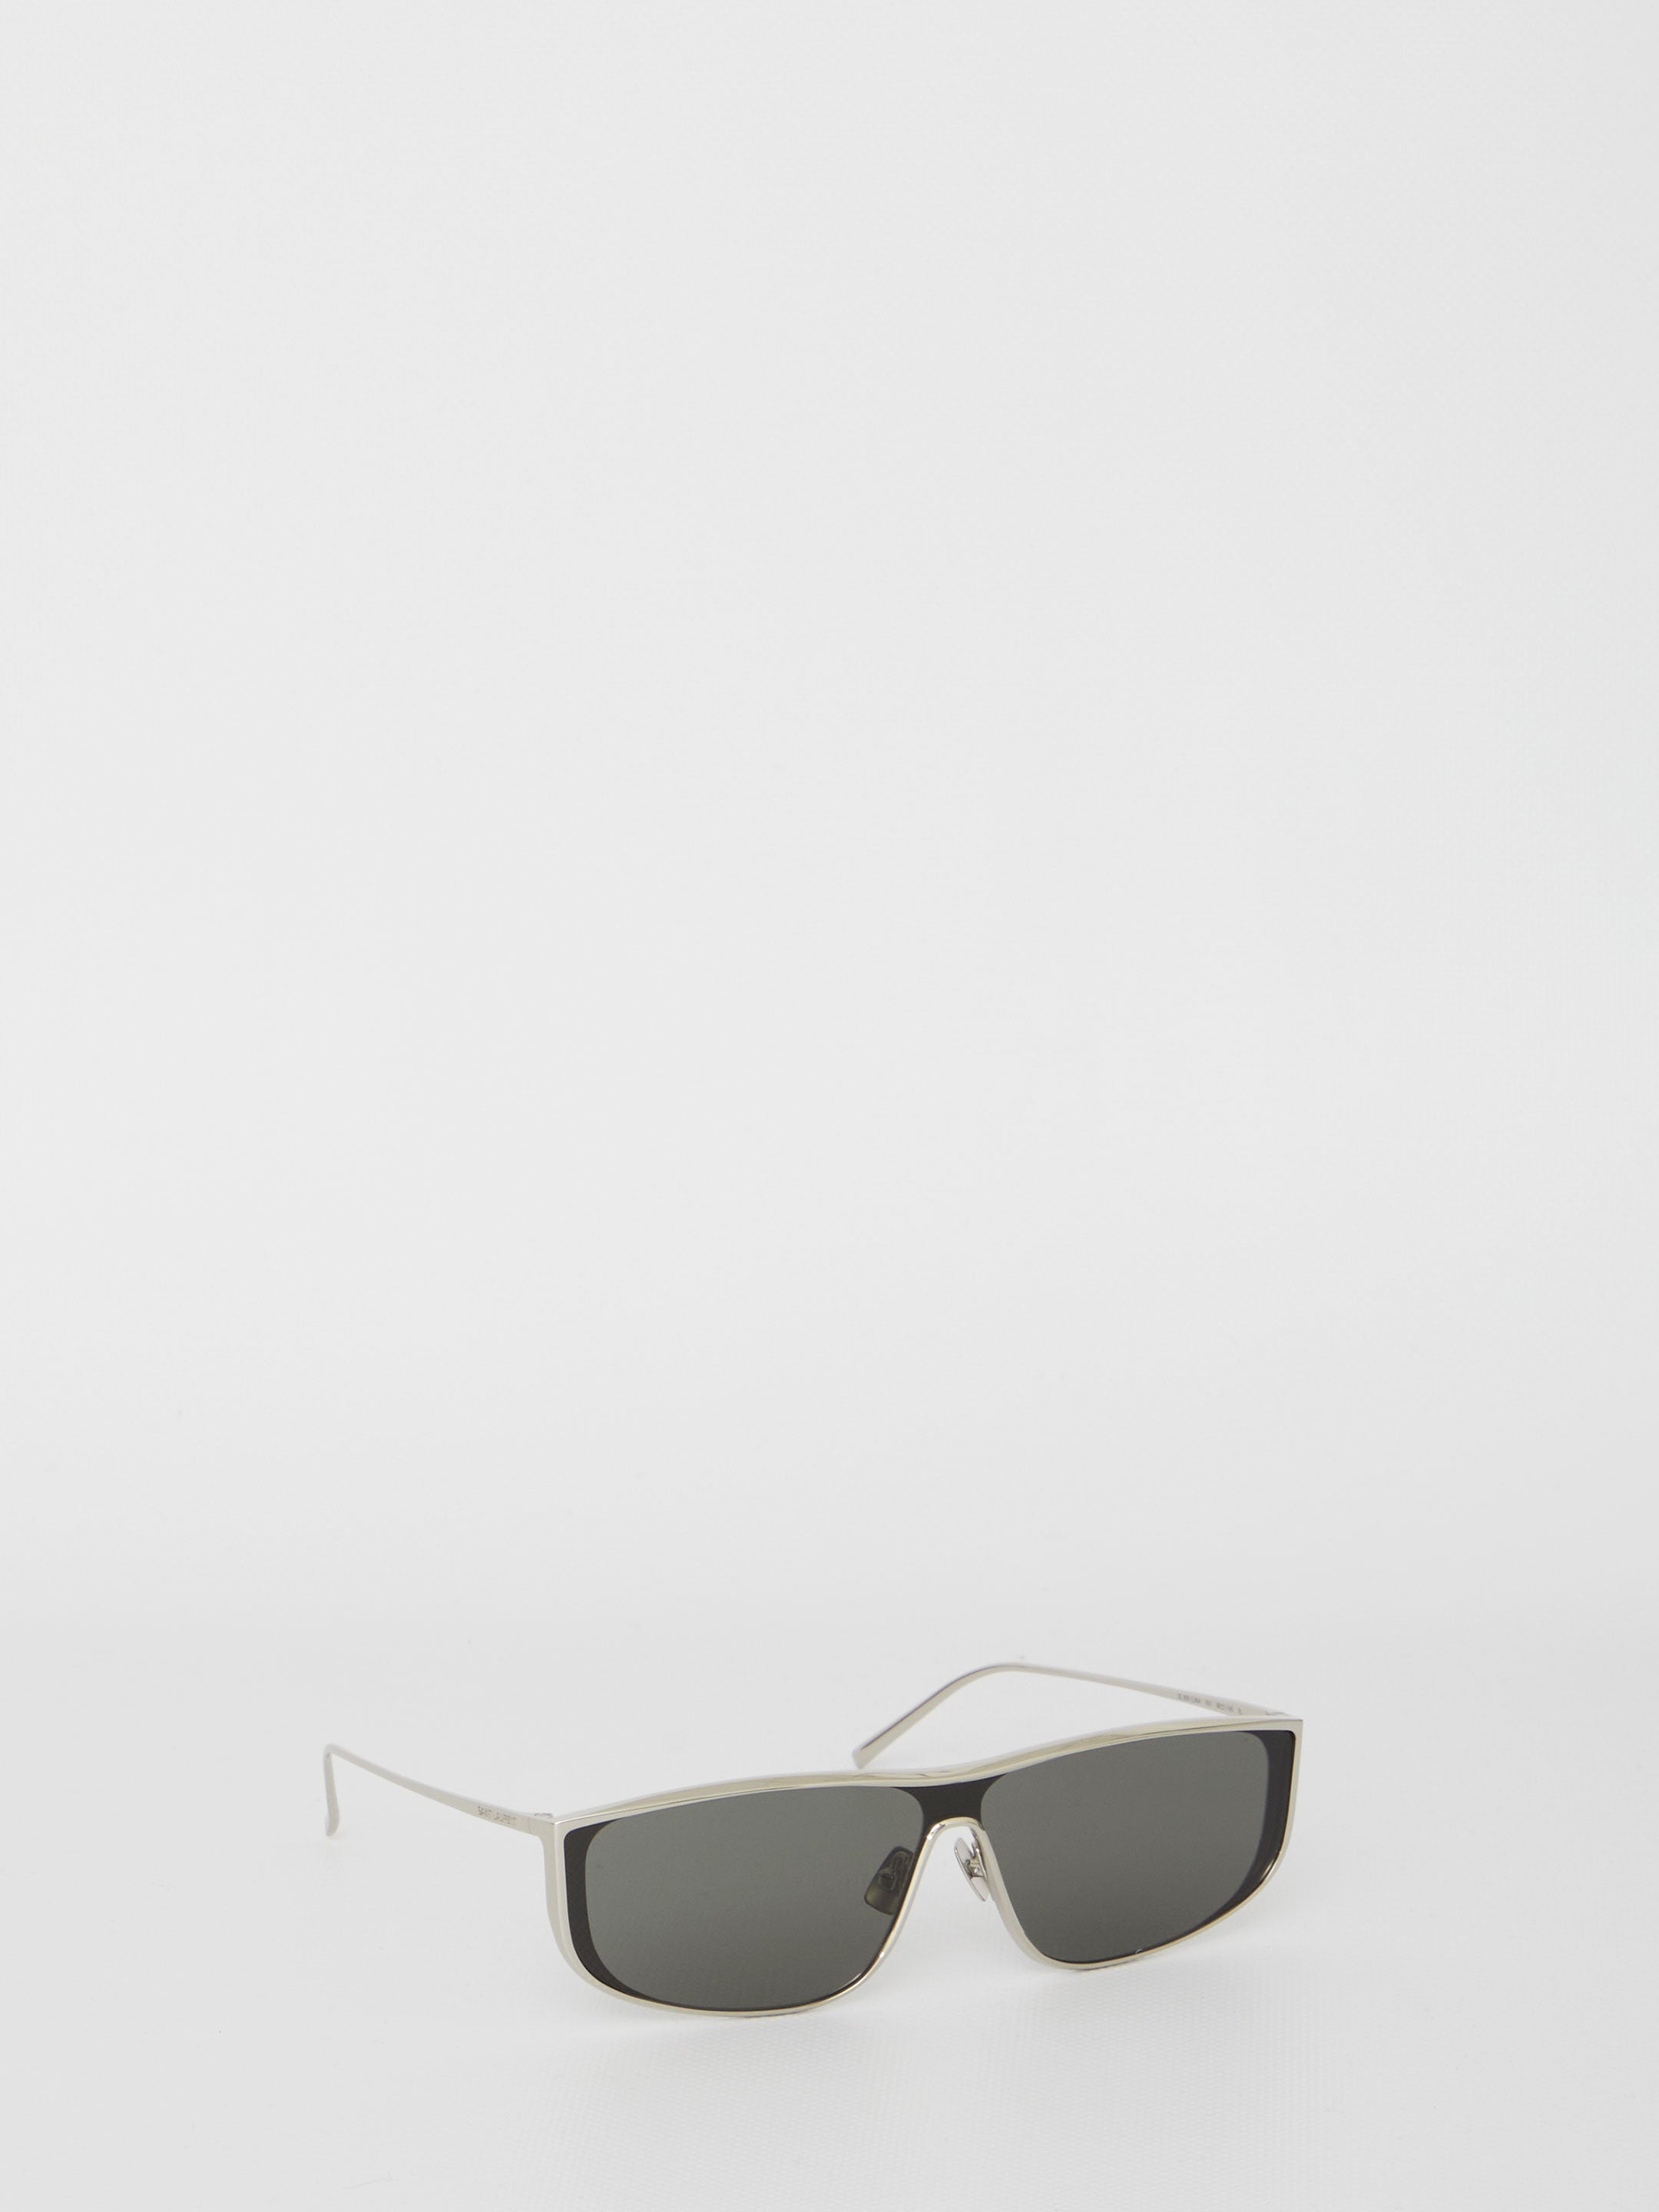 SL 605 Luna sunglasses